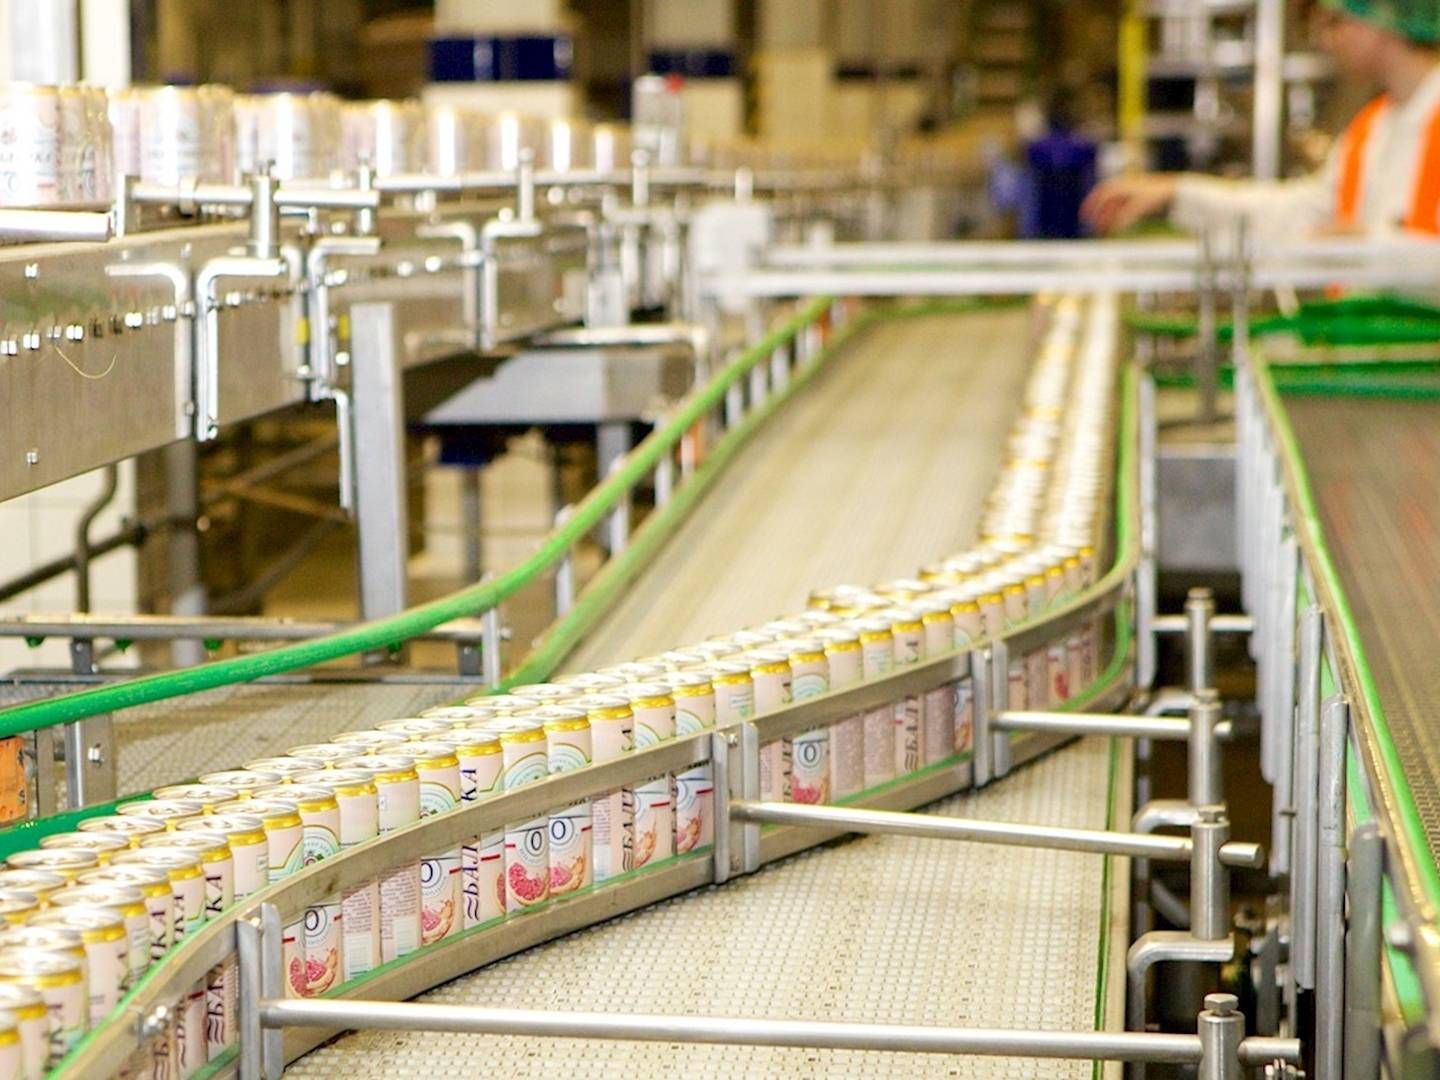 Carlsbergs otte russiske bryggerier kan havne på listen over internationale fabrikker, som i fremtiden kan blive delvist nationaliseret, hvis der bliver gjort alvor af planerne om at indsætte russisk ledelse i udenlandske virksomheder. | Foto: PR/Carlsberg